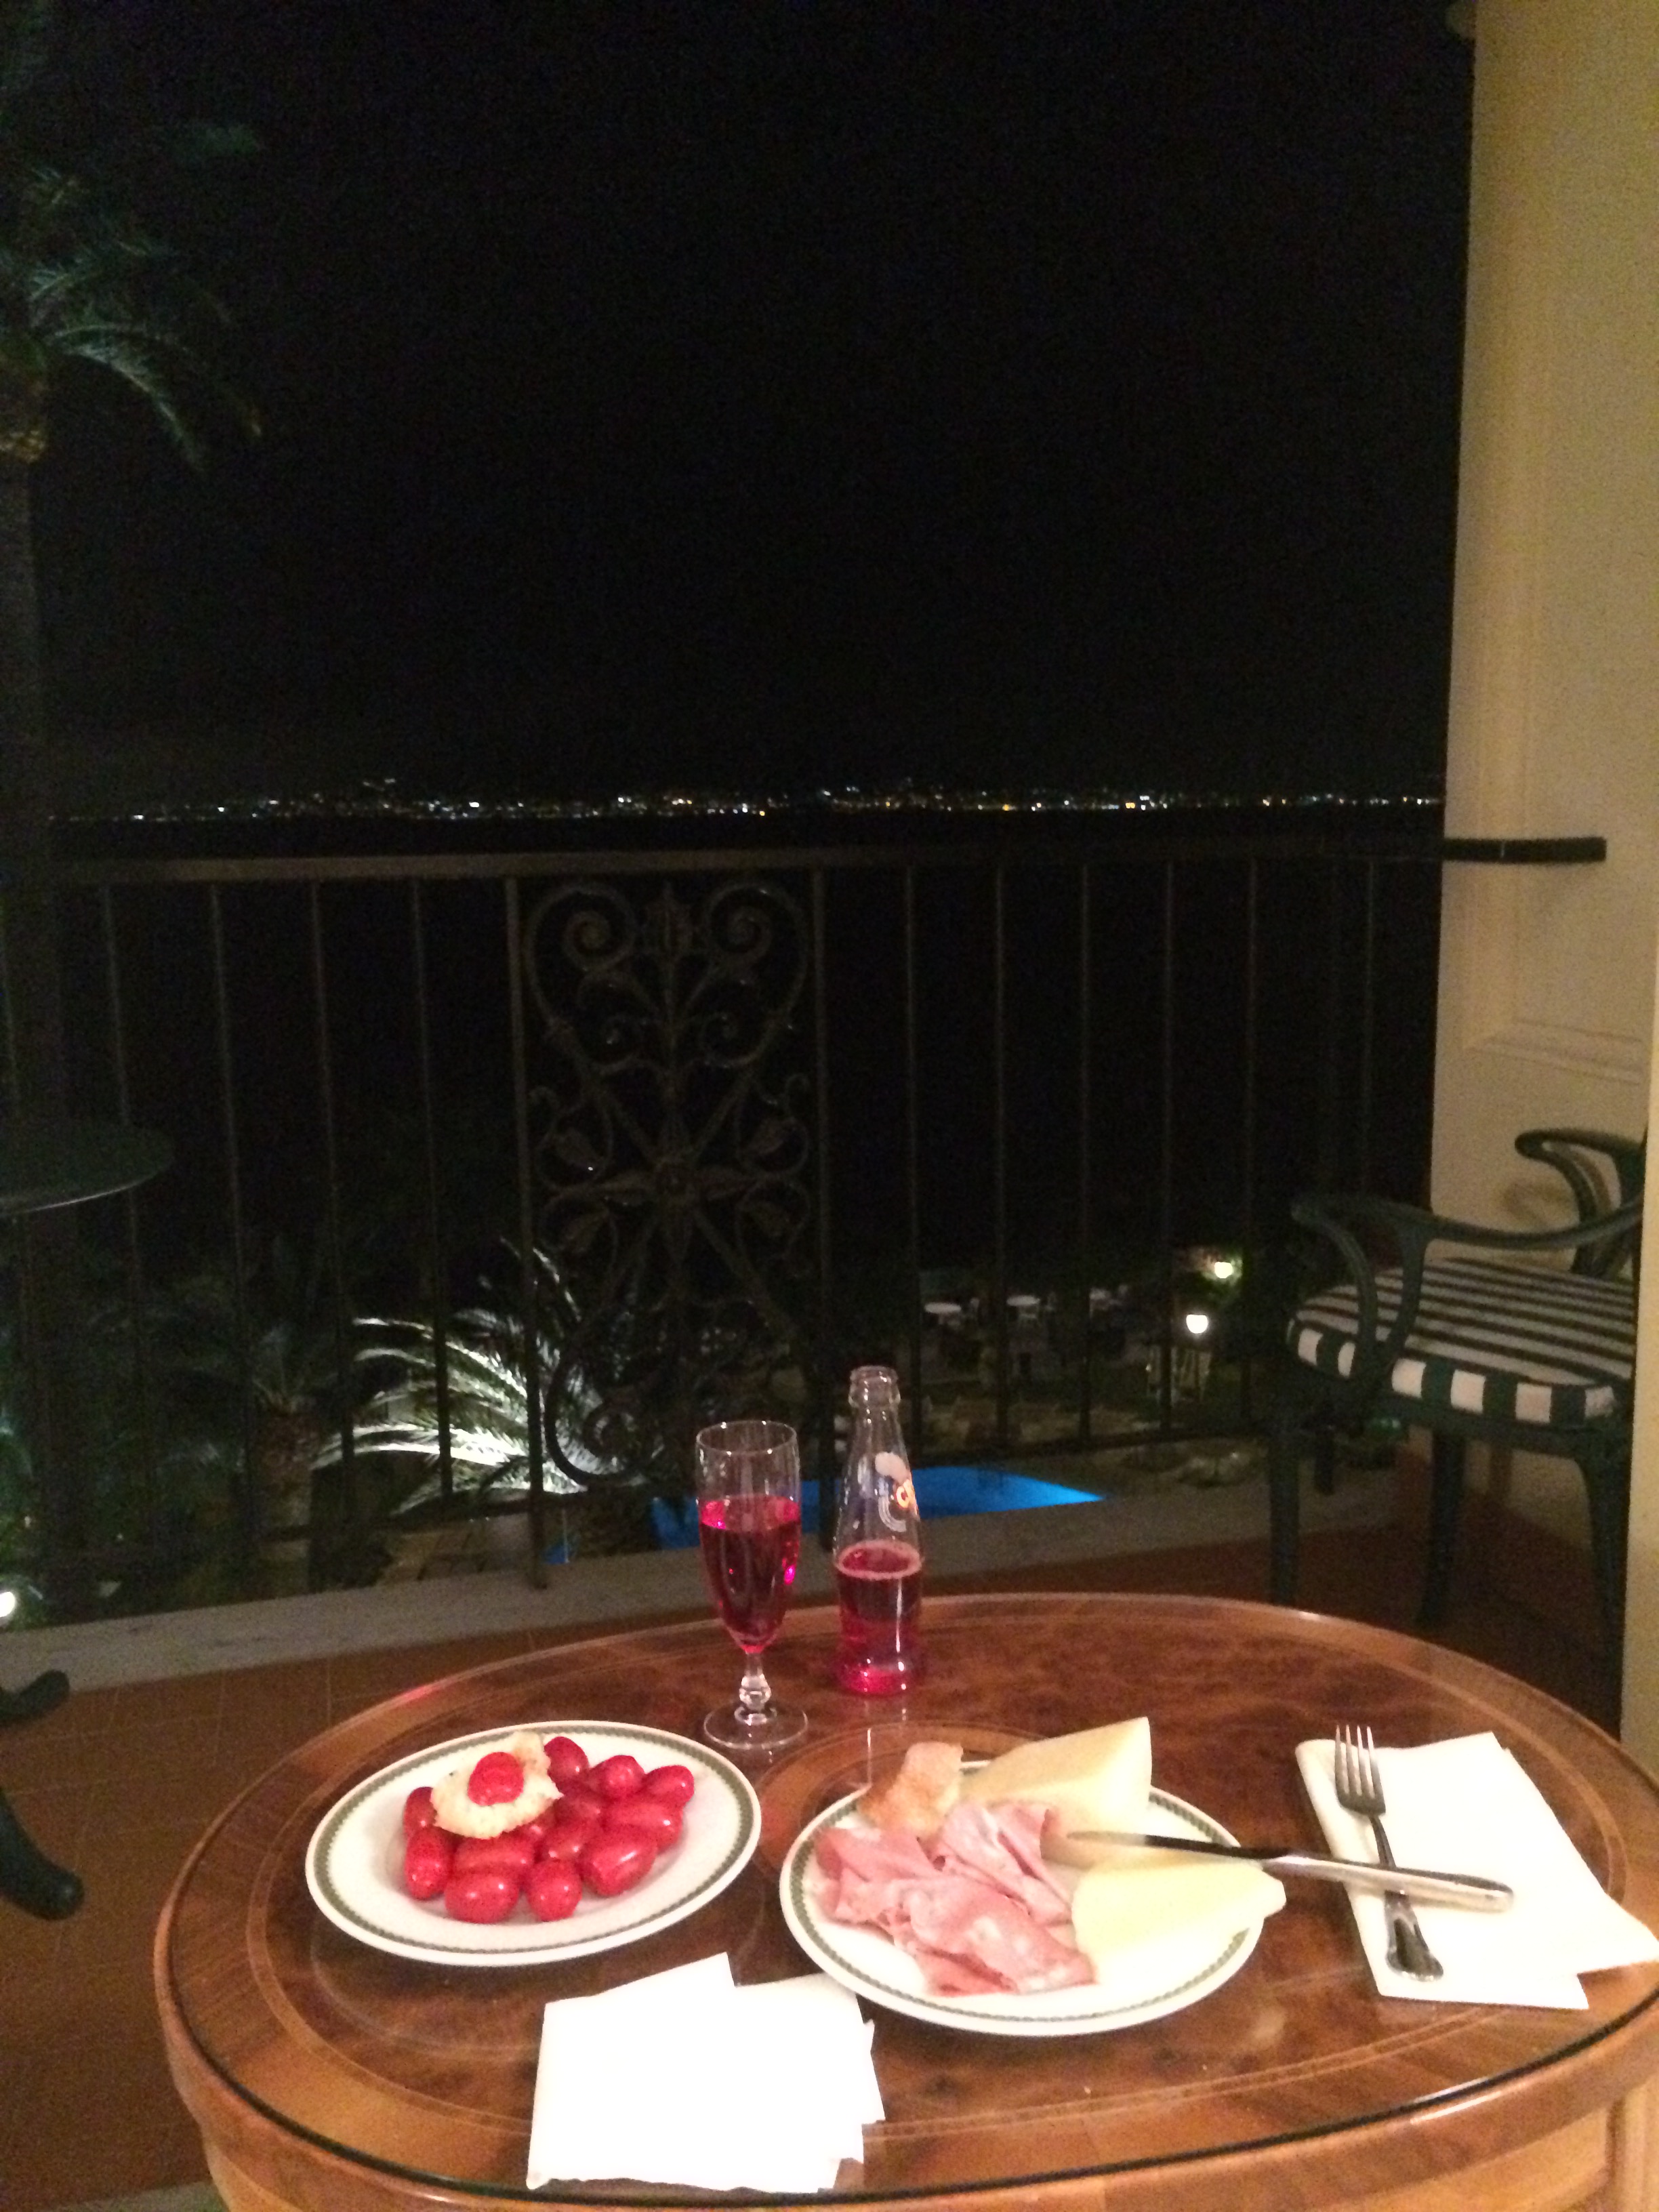 Sorrento cena en el balcon!